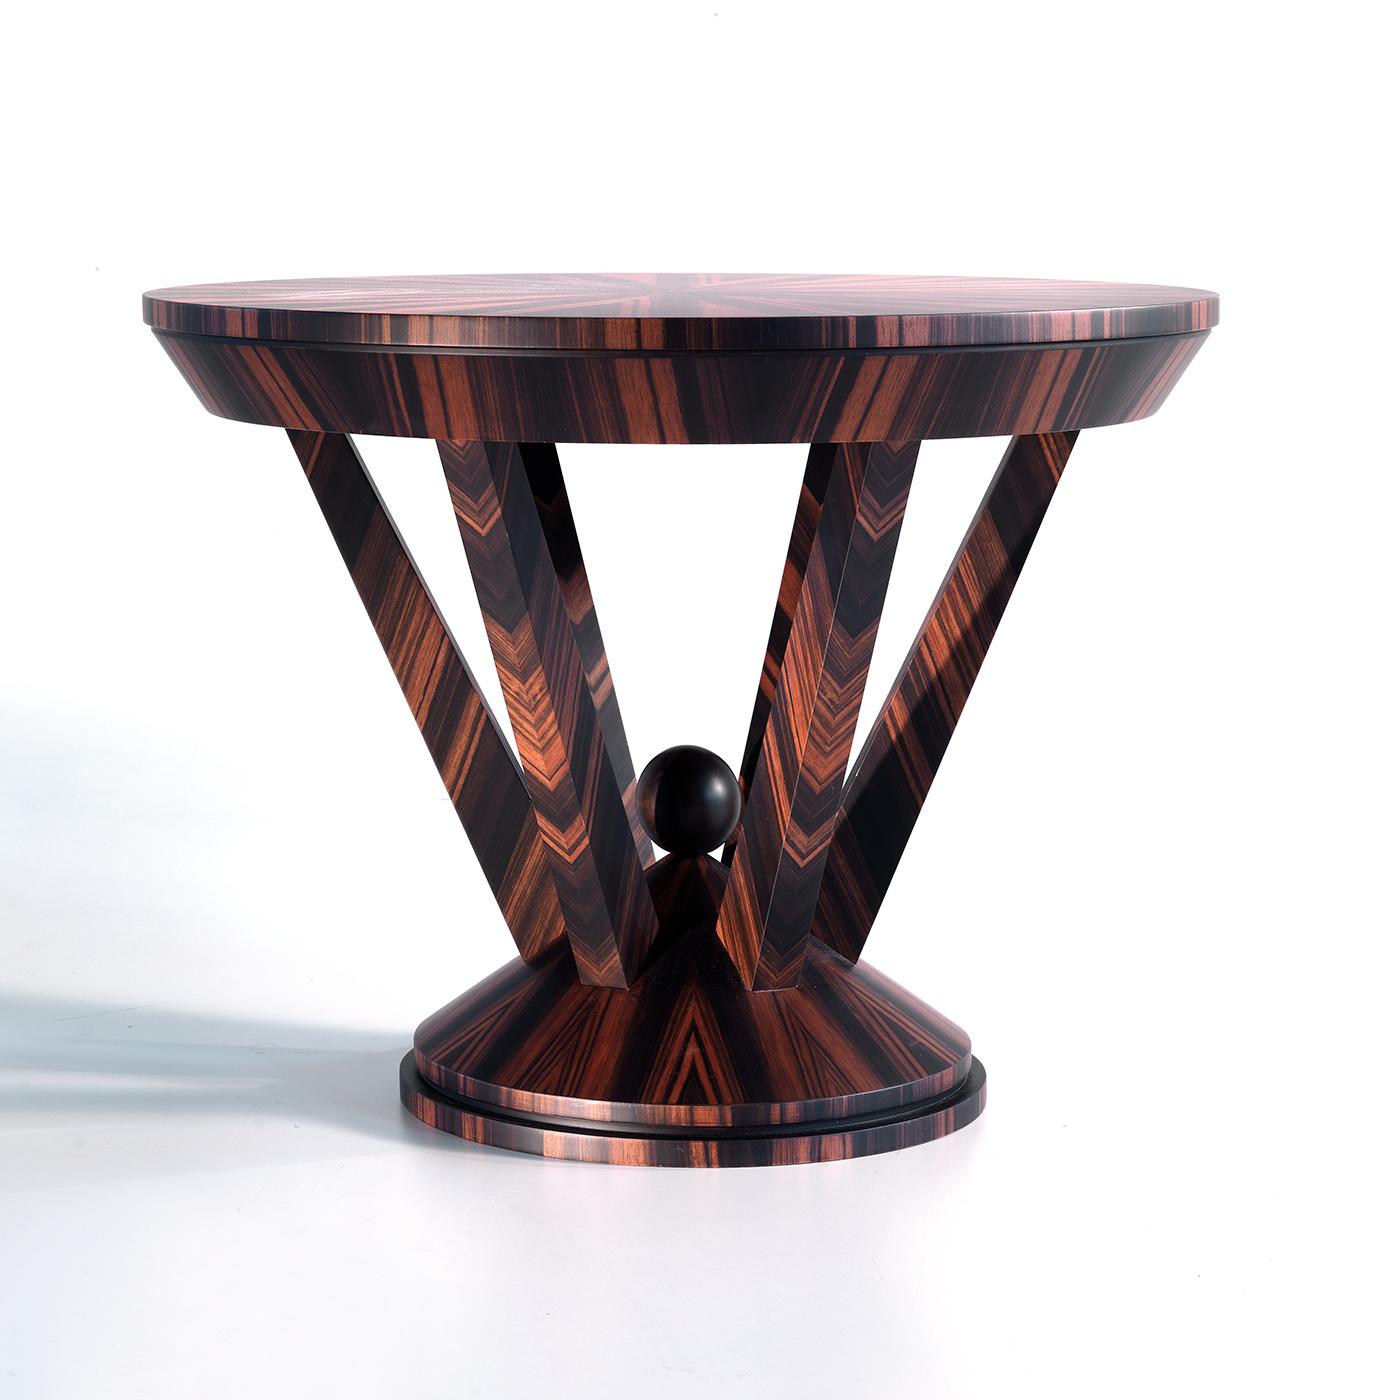 Cette table d'appoint ronde, d'un design saisissant et d'un impact visuel sophistiqué, présente une structure solide entièrement réalisée en ébène Makassar de grande qualité. Sa silhouette audacieuse se compose d'une base conique animée par un